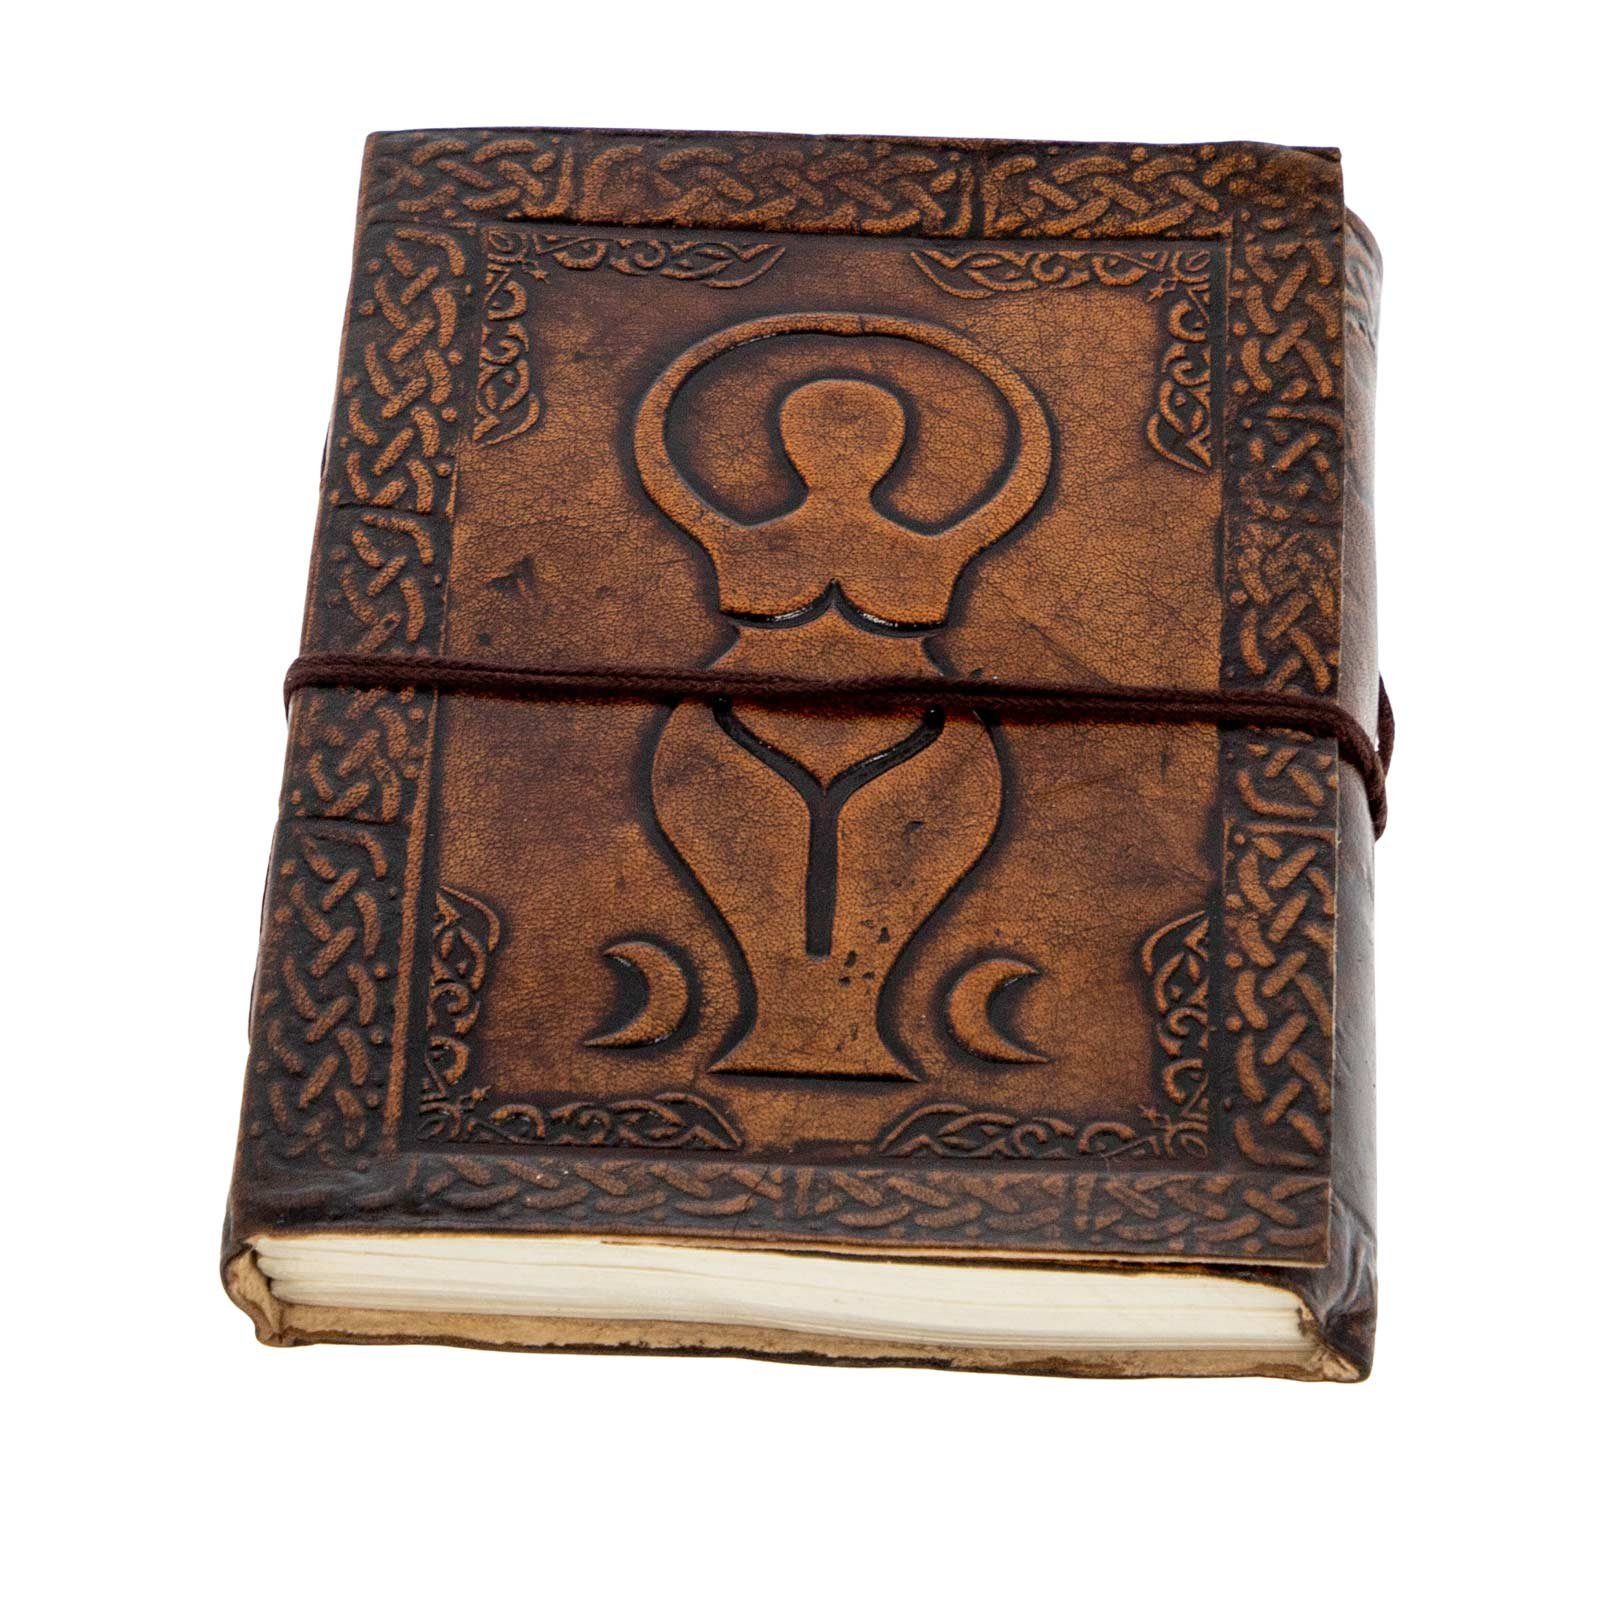 KUNST UND MAGIE Tagebuch Leder Große Mondgöttin Göttin Tagebuch Notizbuch Wicca 15x11,5cm